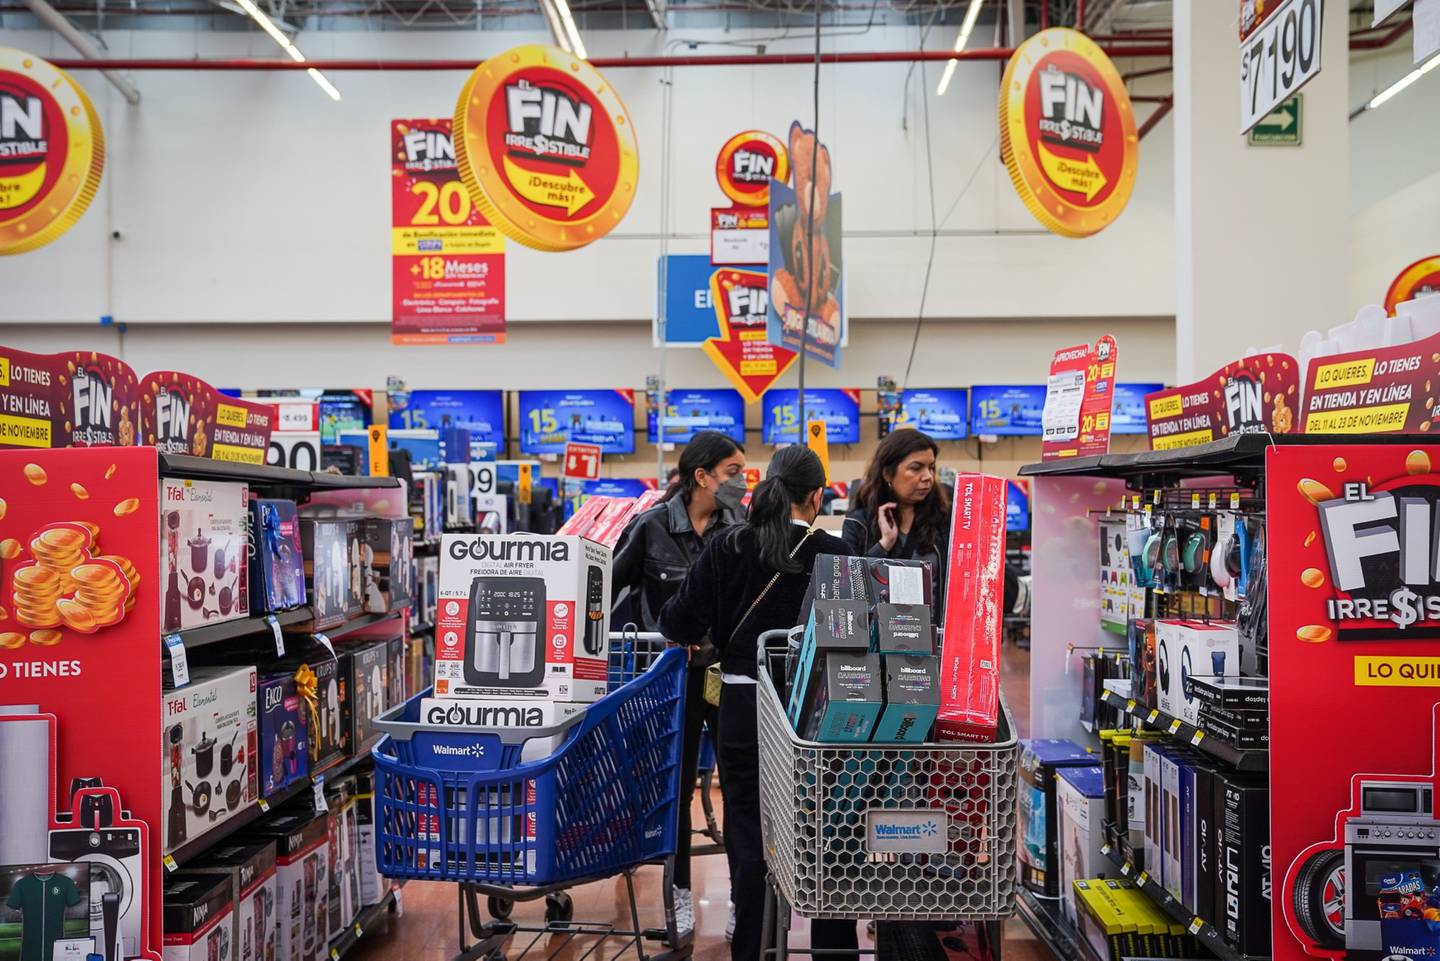 Cashi, el servicio de crédito digital de Walmart, alcanzó 5,4 millones de usuarios en México. Se trata de una nueva línea de negocio que impulsó las ventas del cuarto trimestre